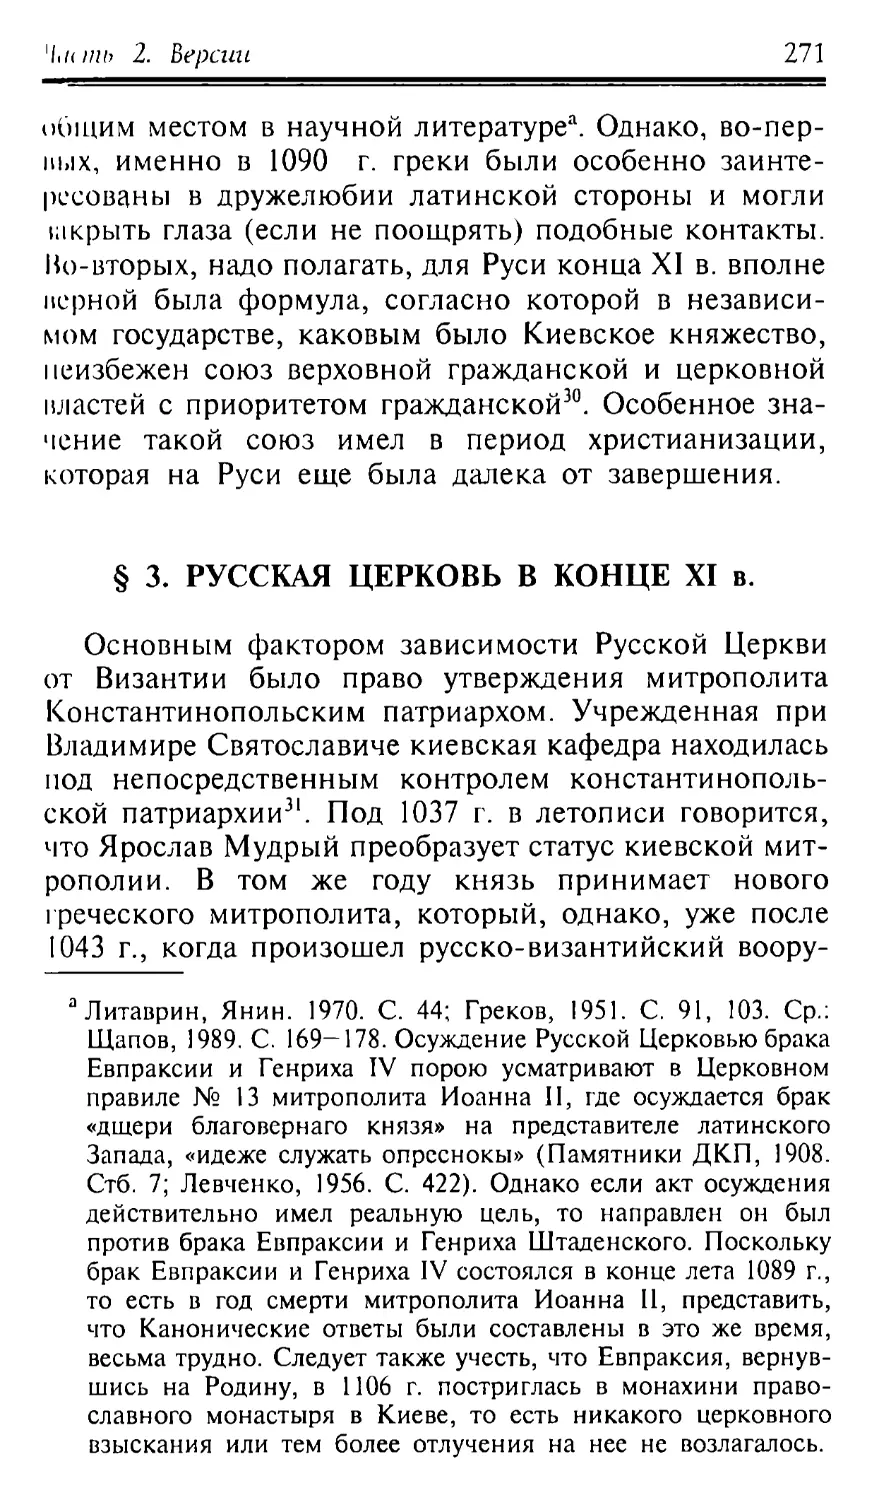 § 3. Русская Церковь в конце XI в